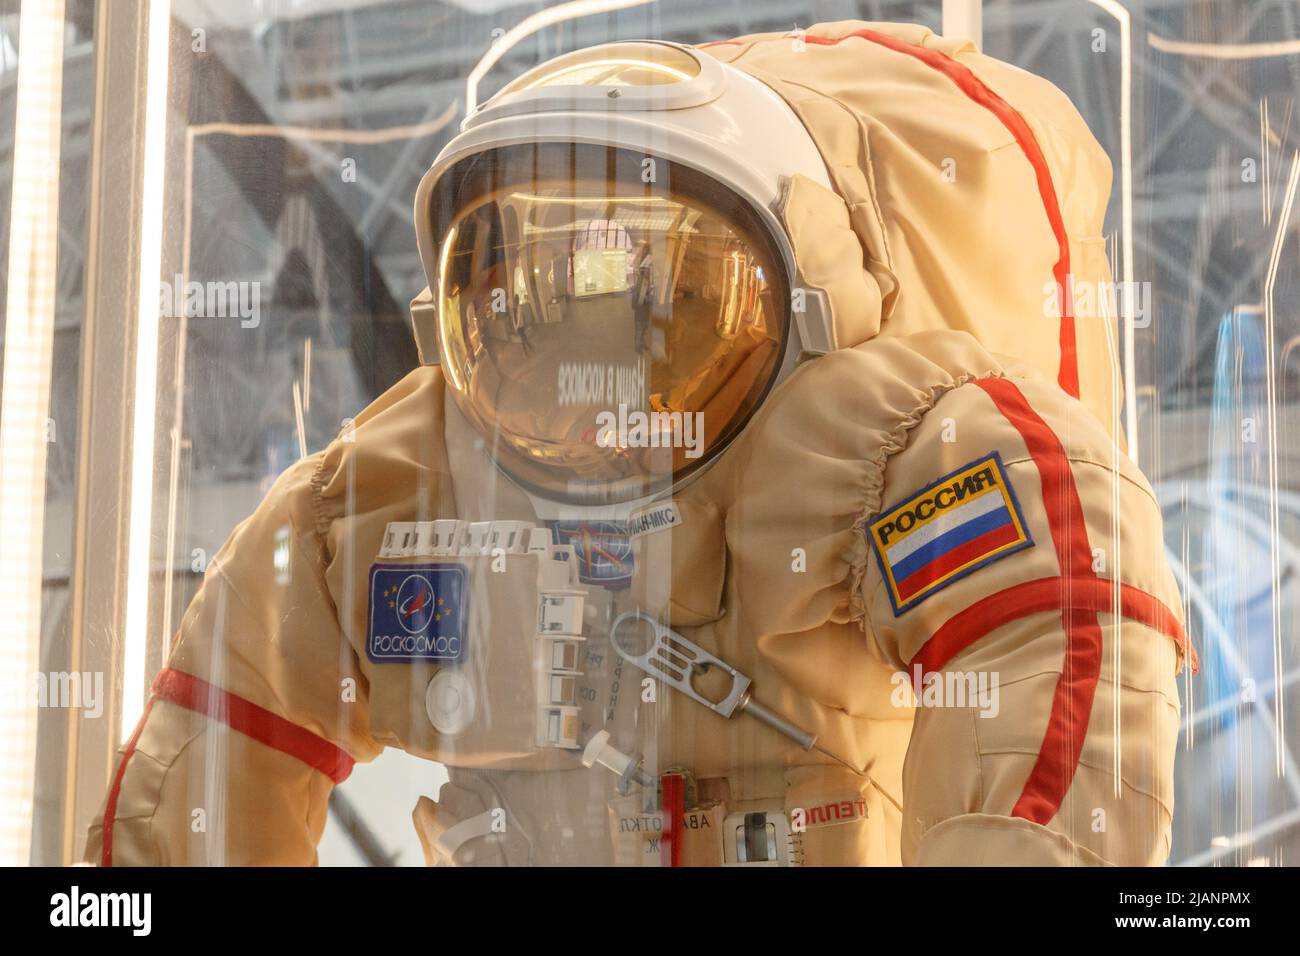 Moskau, Russland - 28. November 2018: Russische Astronauten-Raumanzüge im Moskauer Weltraummuseum, das speziell für Weltraumfahrzeuge-Missionen entwickelt wurde Stockfoto